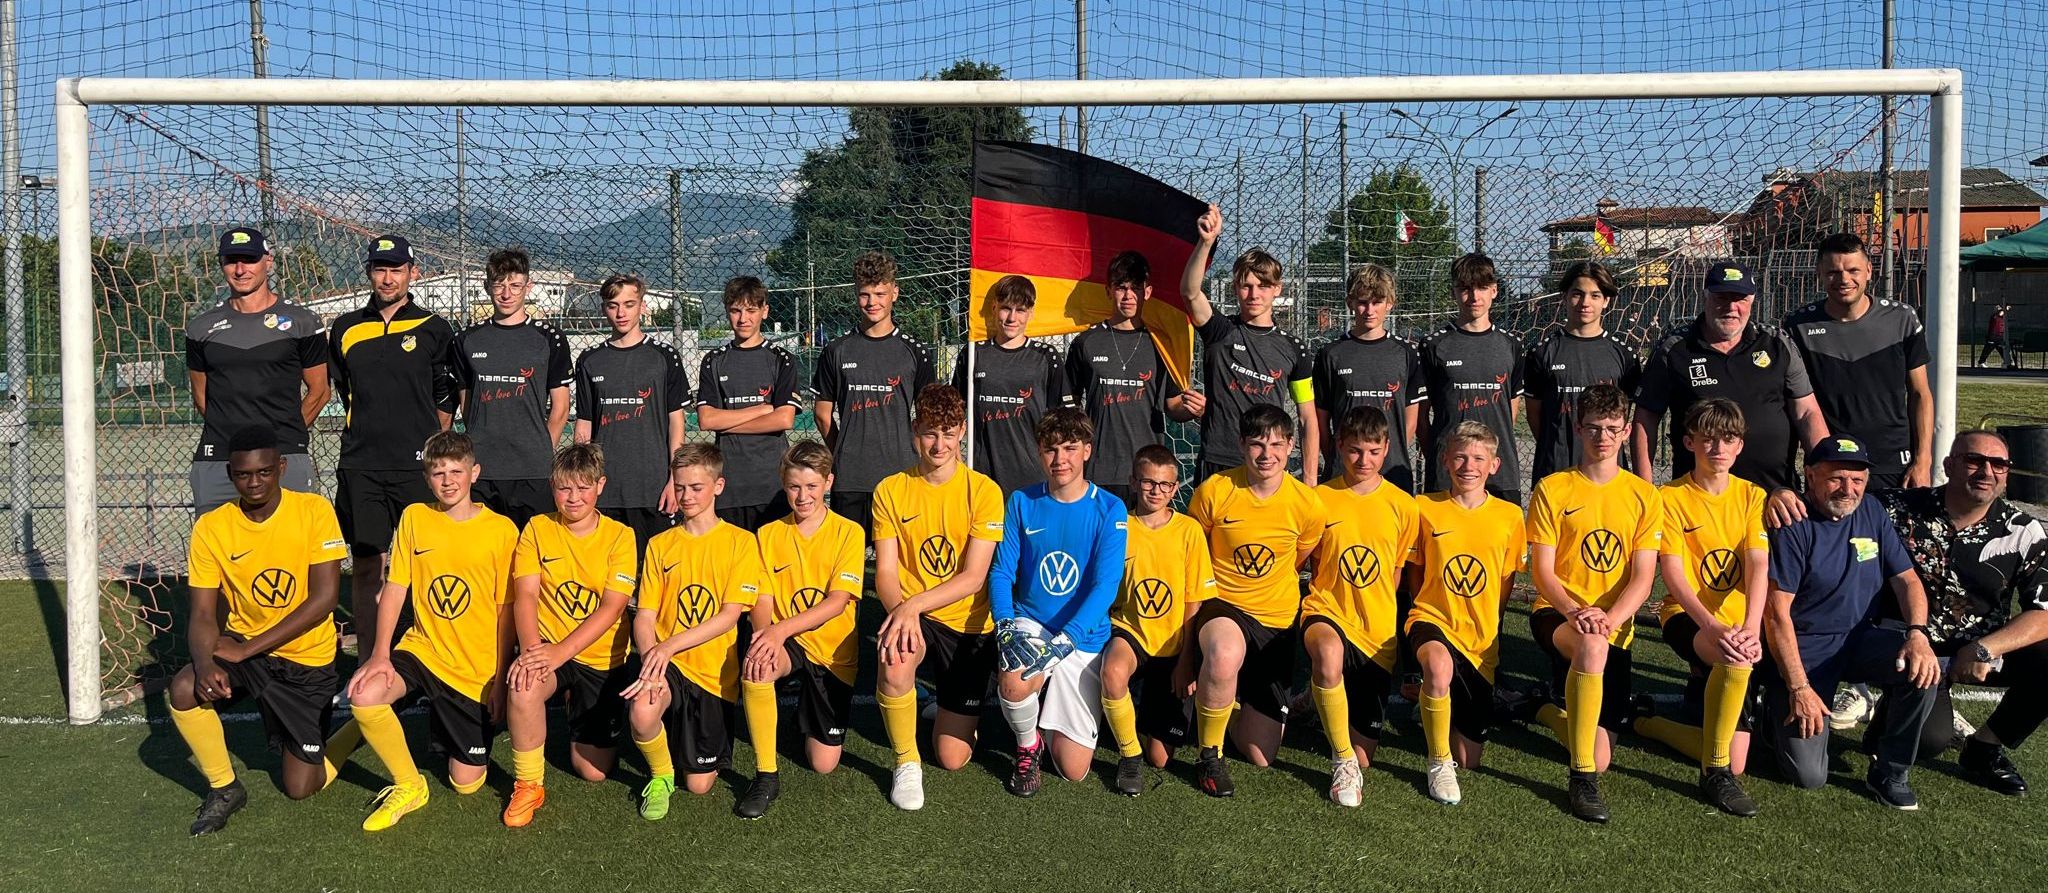 Fußball Teams aus Altshausen/Ebenweiler nehmen erfolgreich am internationalen Turnier in Lariano/Rom teil